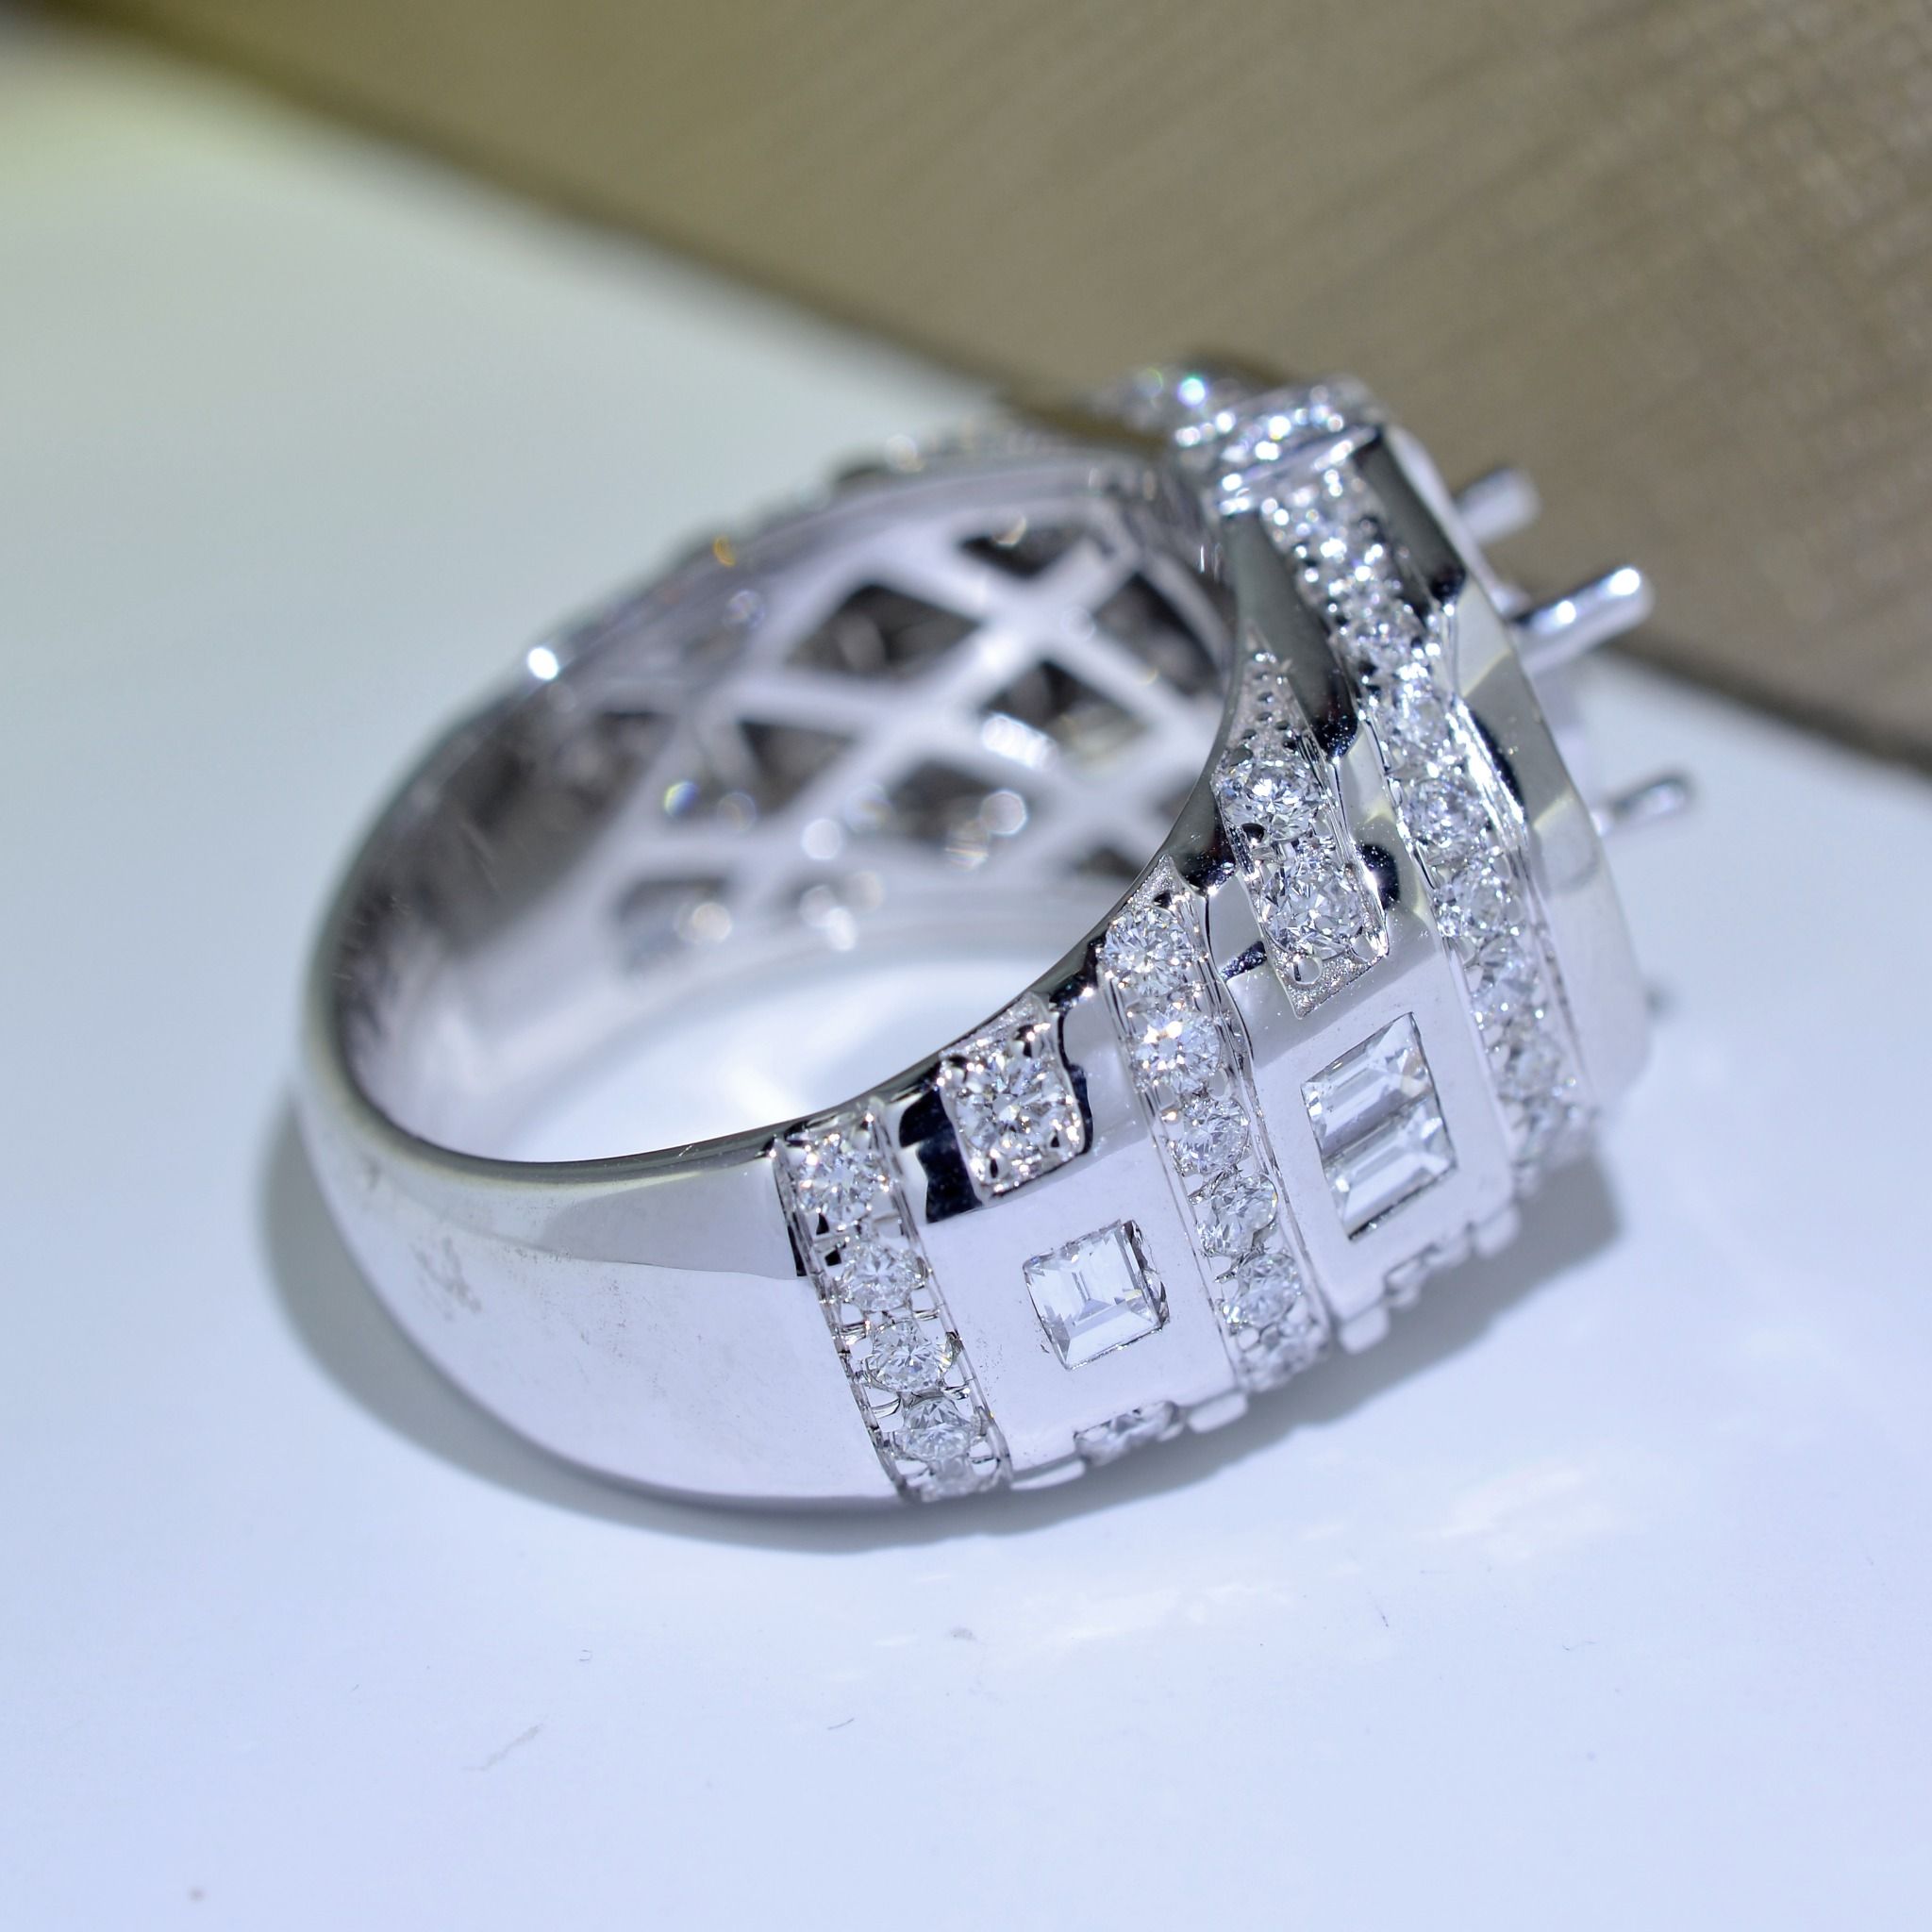  MALE DIAMOND RING 122617 6.4MM (NHẪN NAM KIM CƯƠNG 122617 Ổ CHỦ 6.4LI) 